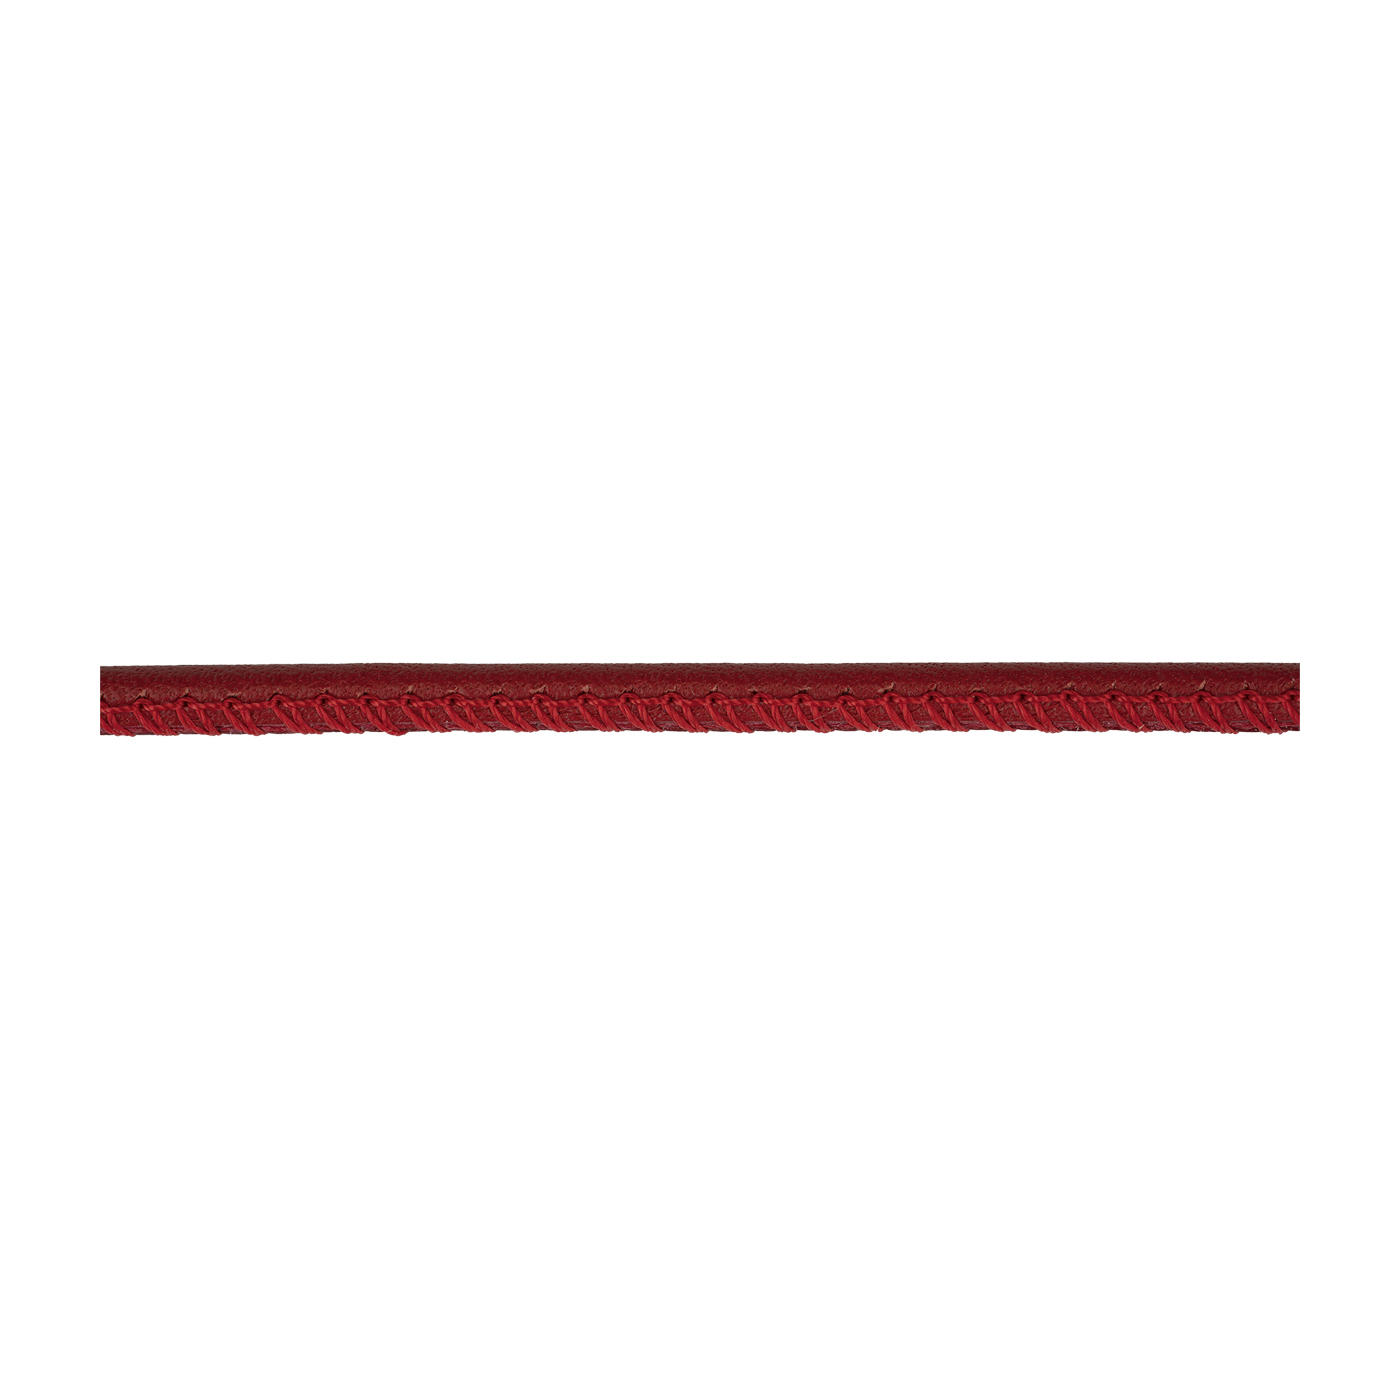 Lederband, rot, ø 3 mm, aus Kalbsleder - 1 m